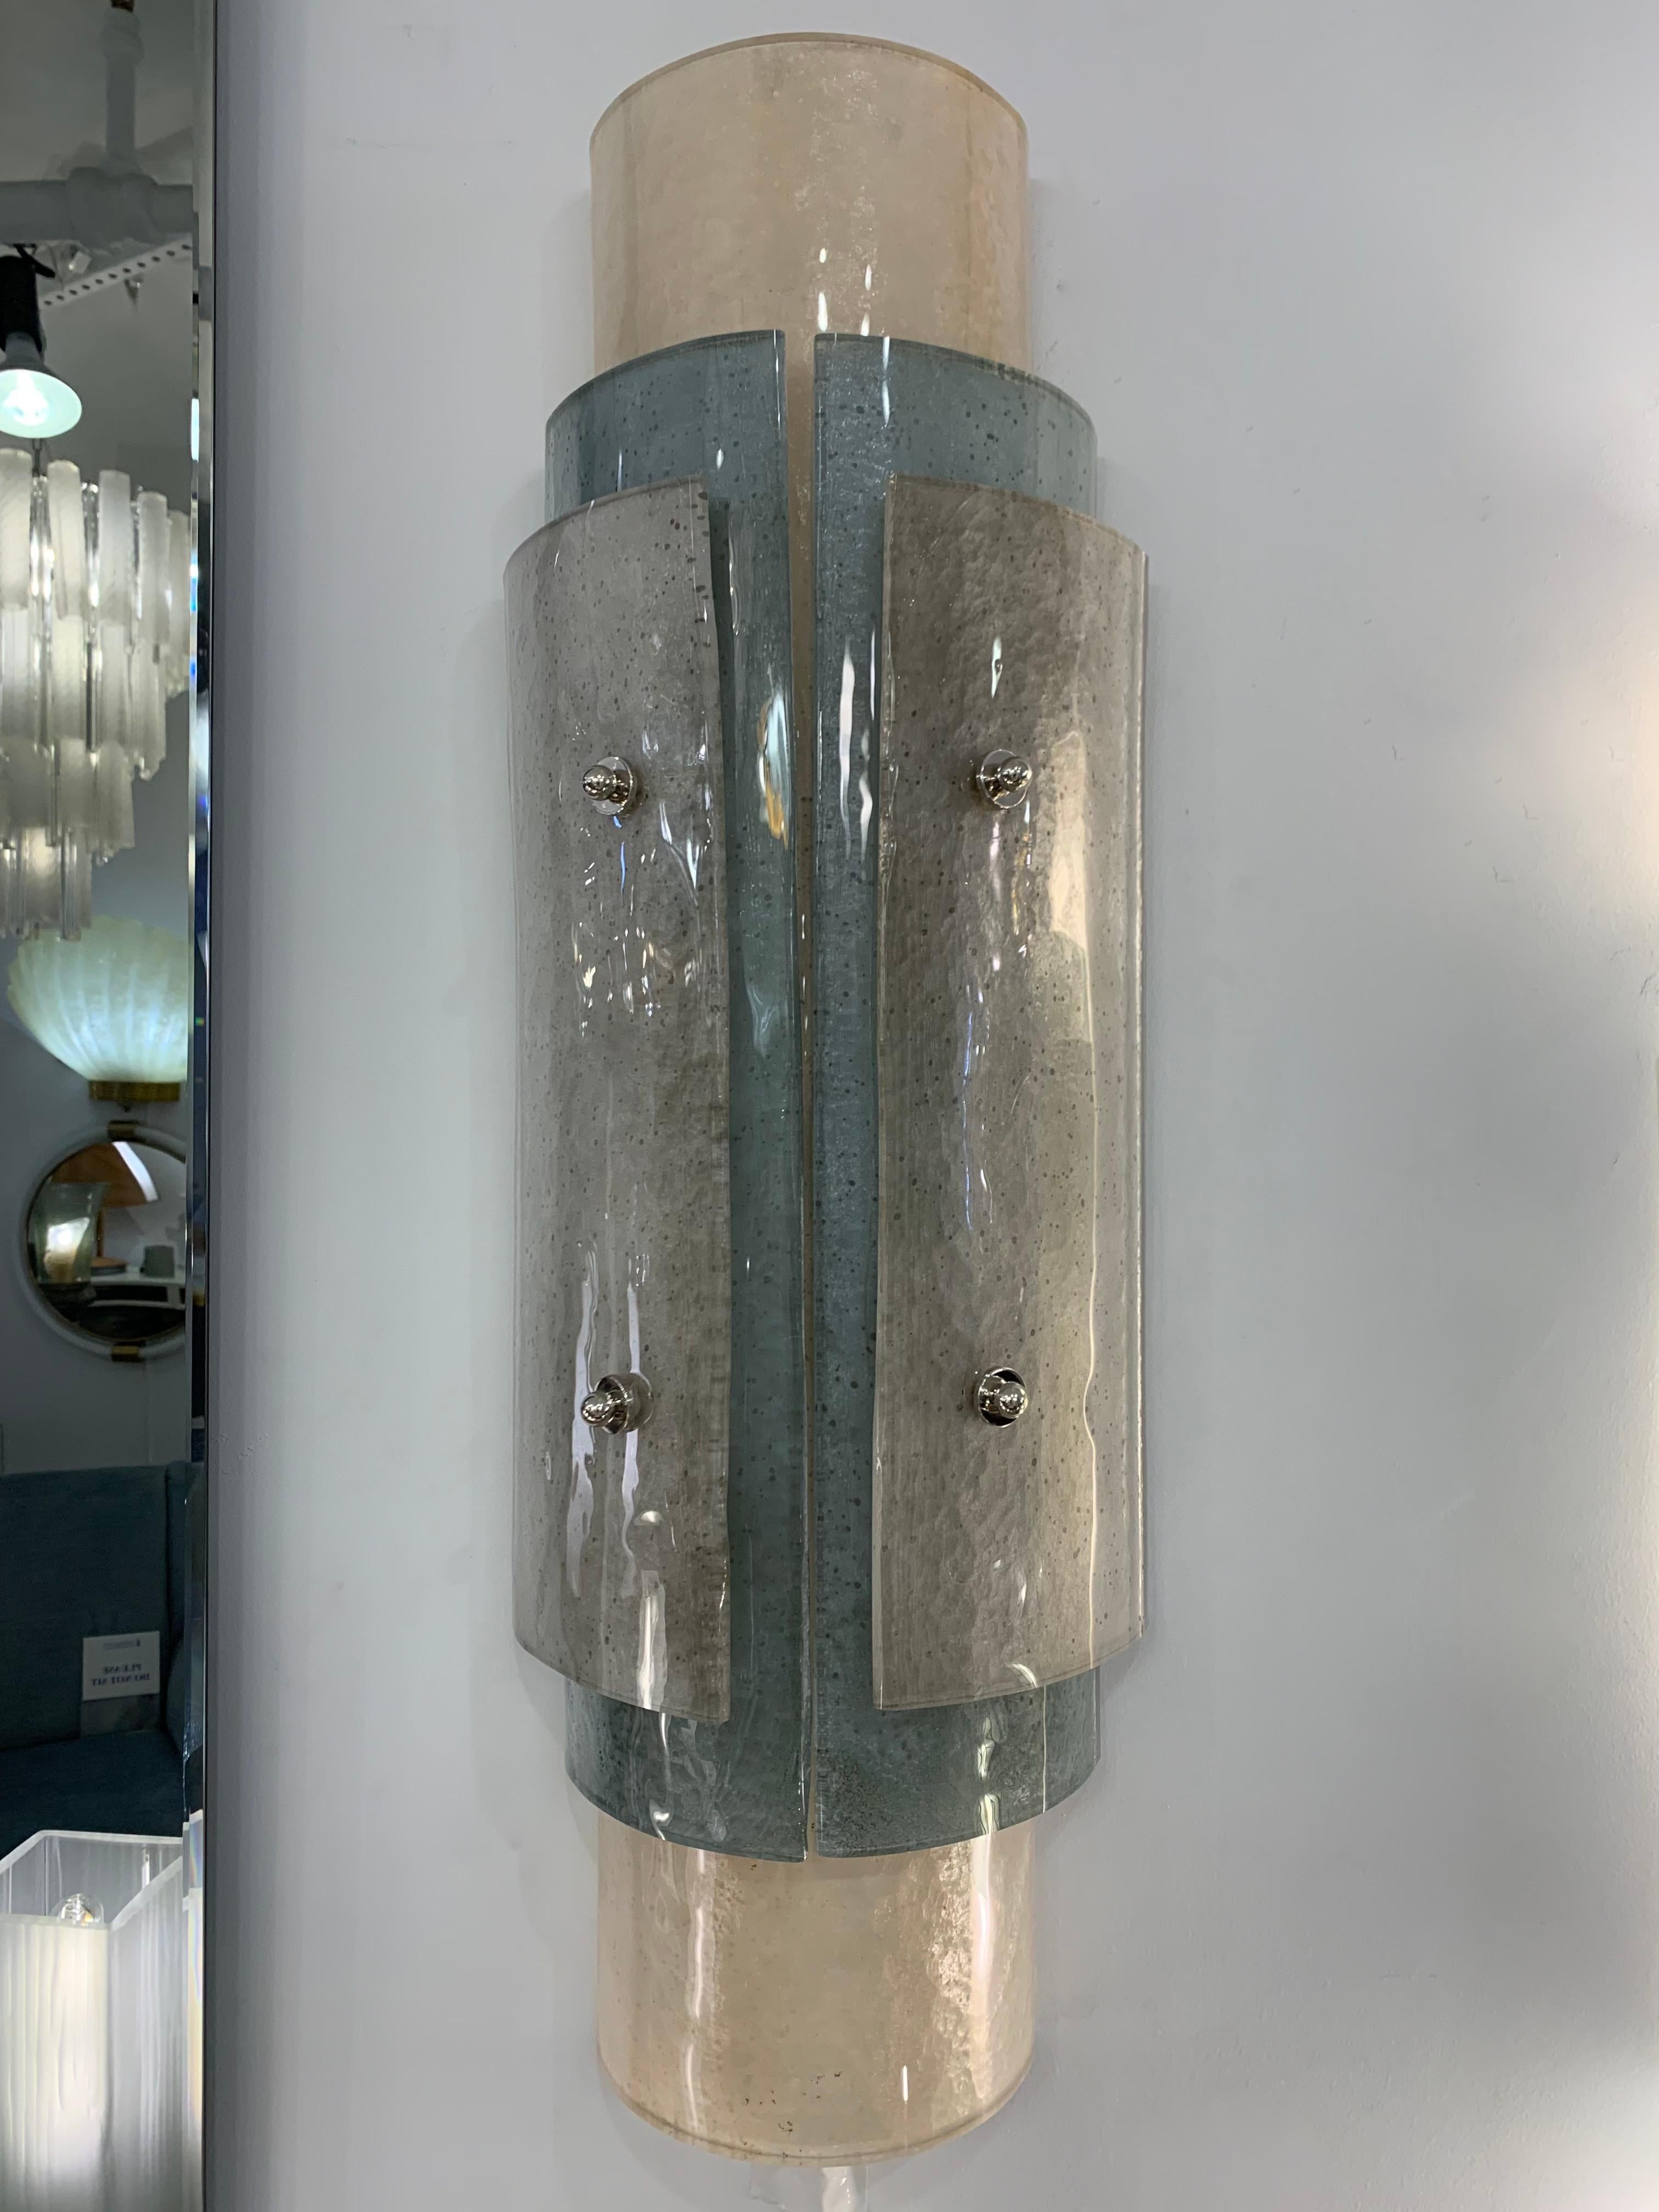 Deux paires disponibles immédiatement - Un design méditerranéen italien très élégant et raffiné en verre soufflé de Murano travaillé avec la technique du scavo : le verre dépoli a une finition similaire aux découvertes archéologiques du verre romain